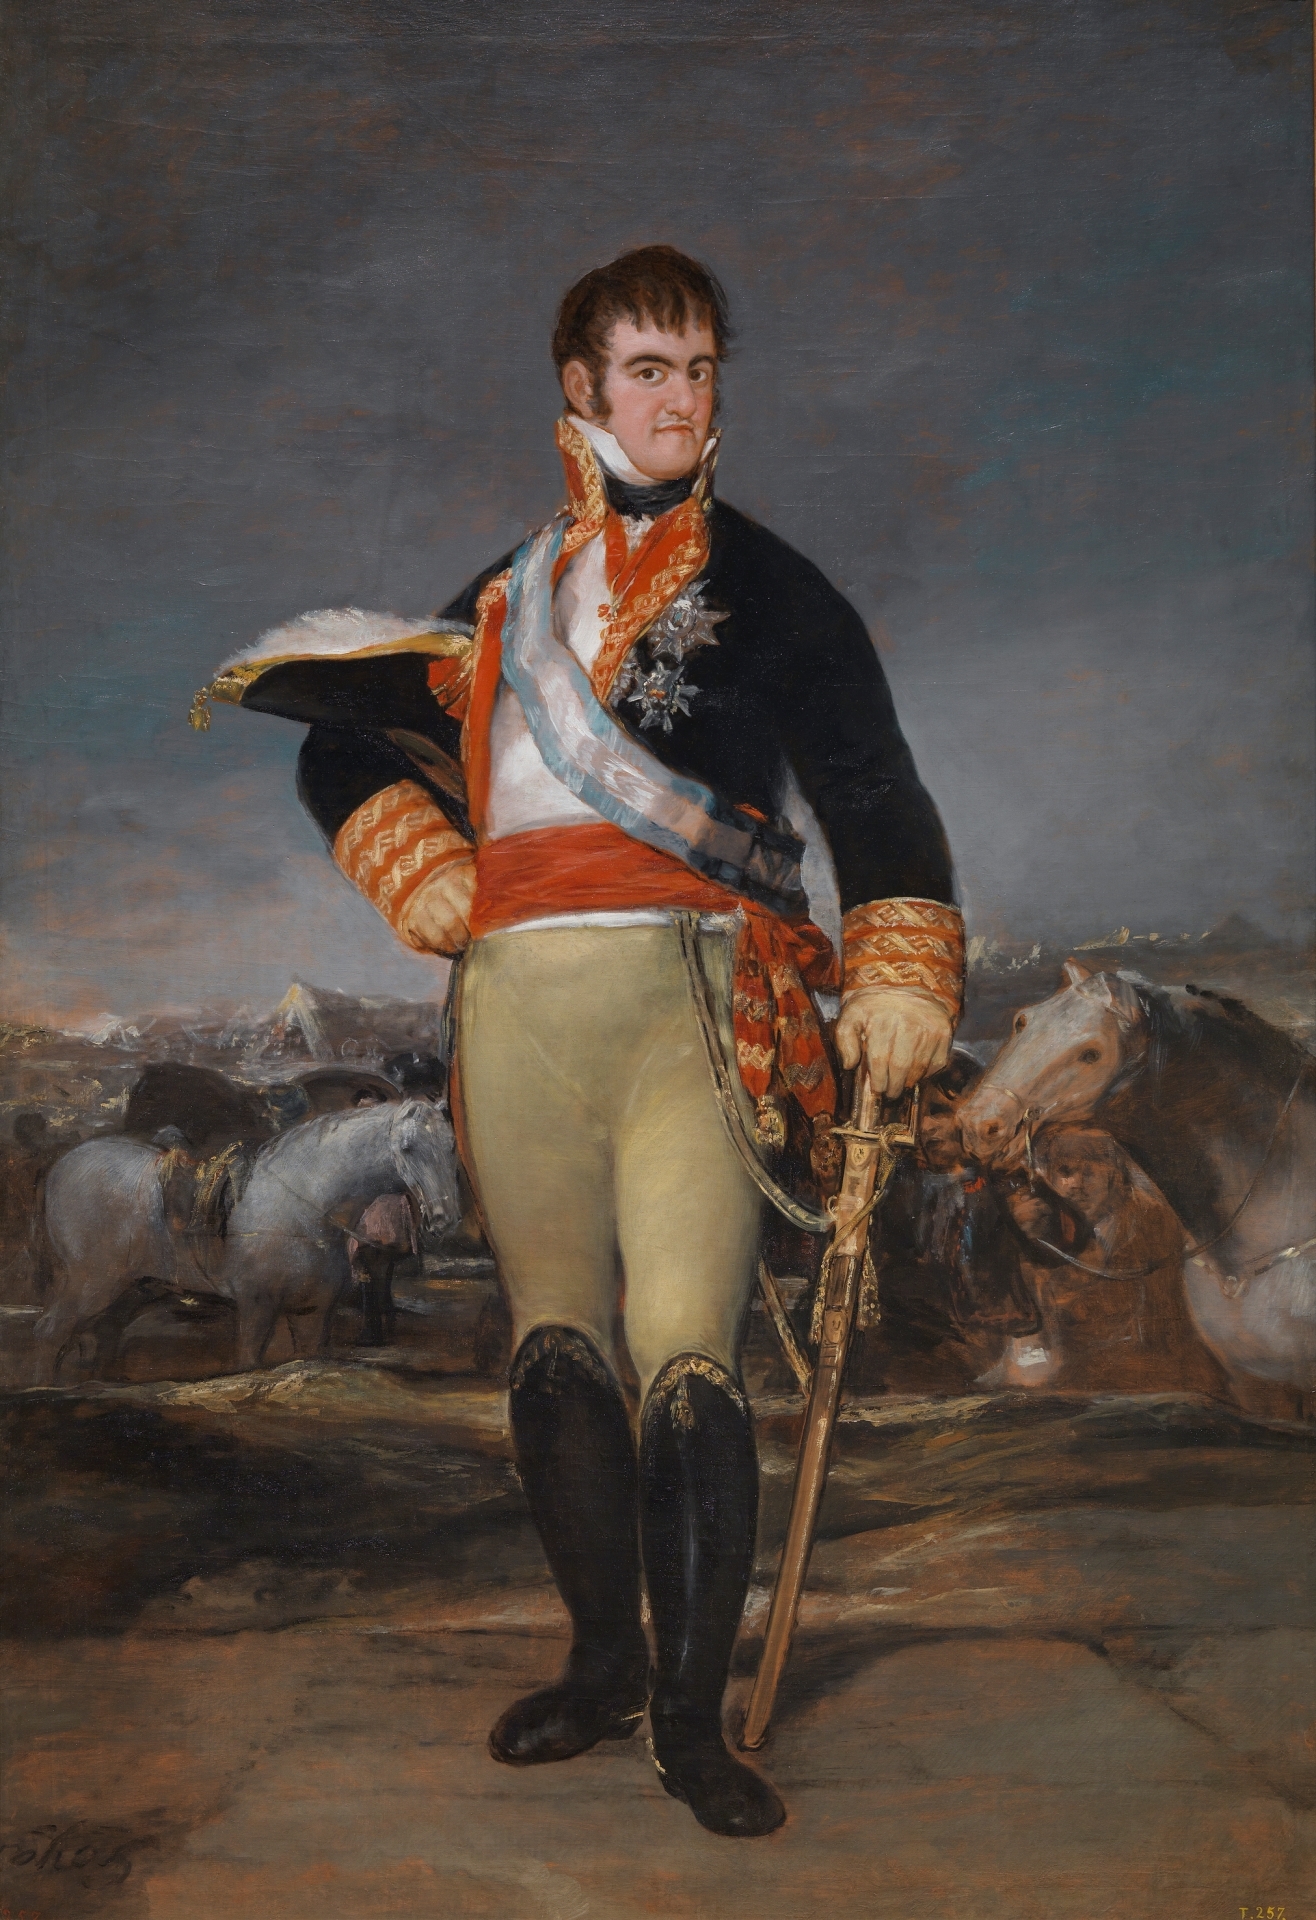 11 de diciembre de 1813 Napoleón devolvía la monarquía española a Fernando VII